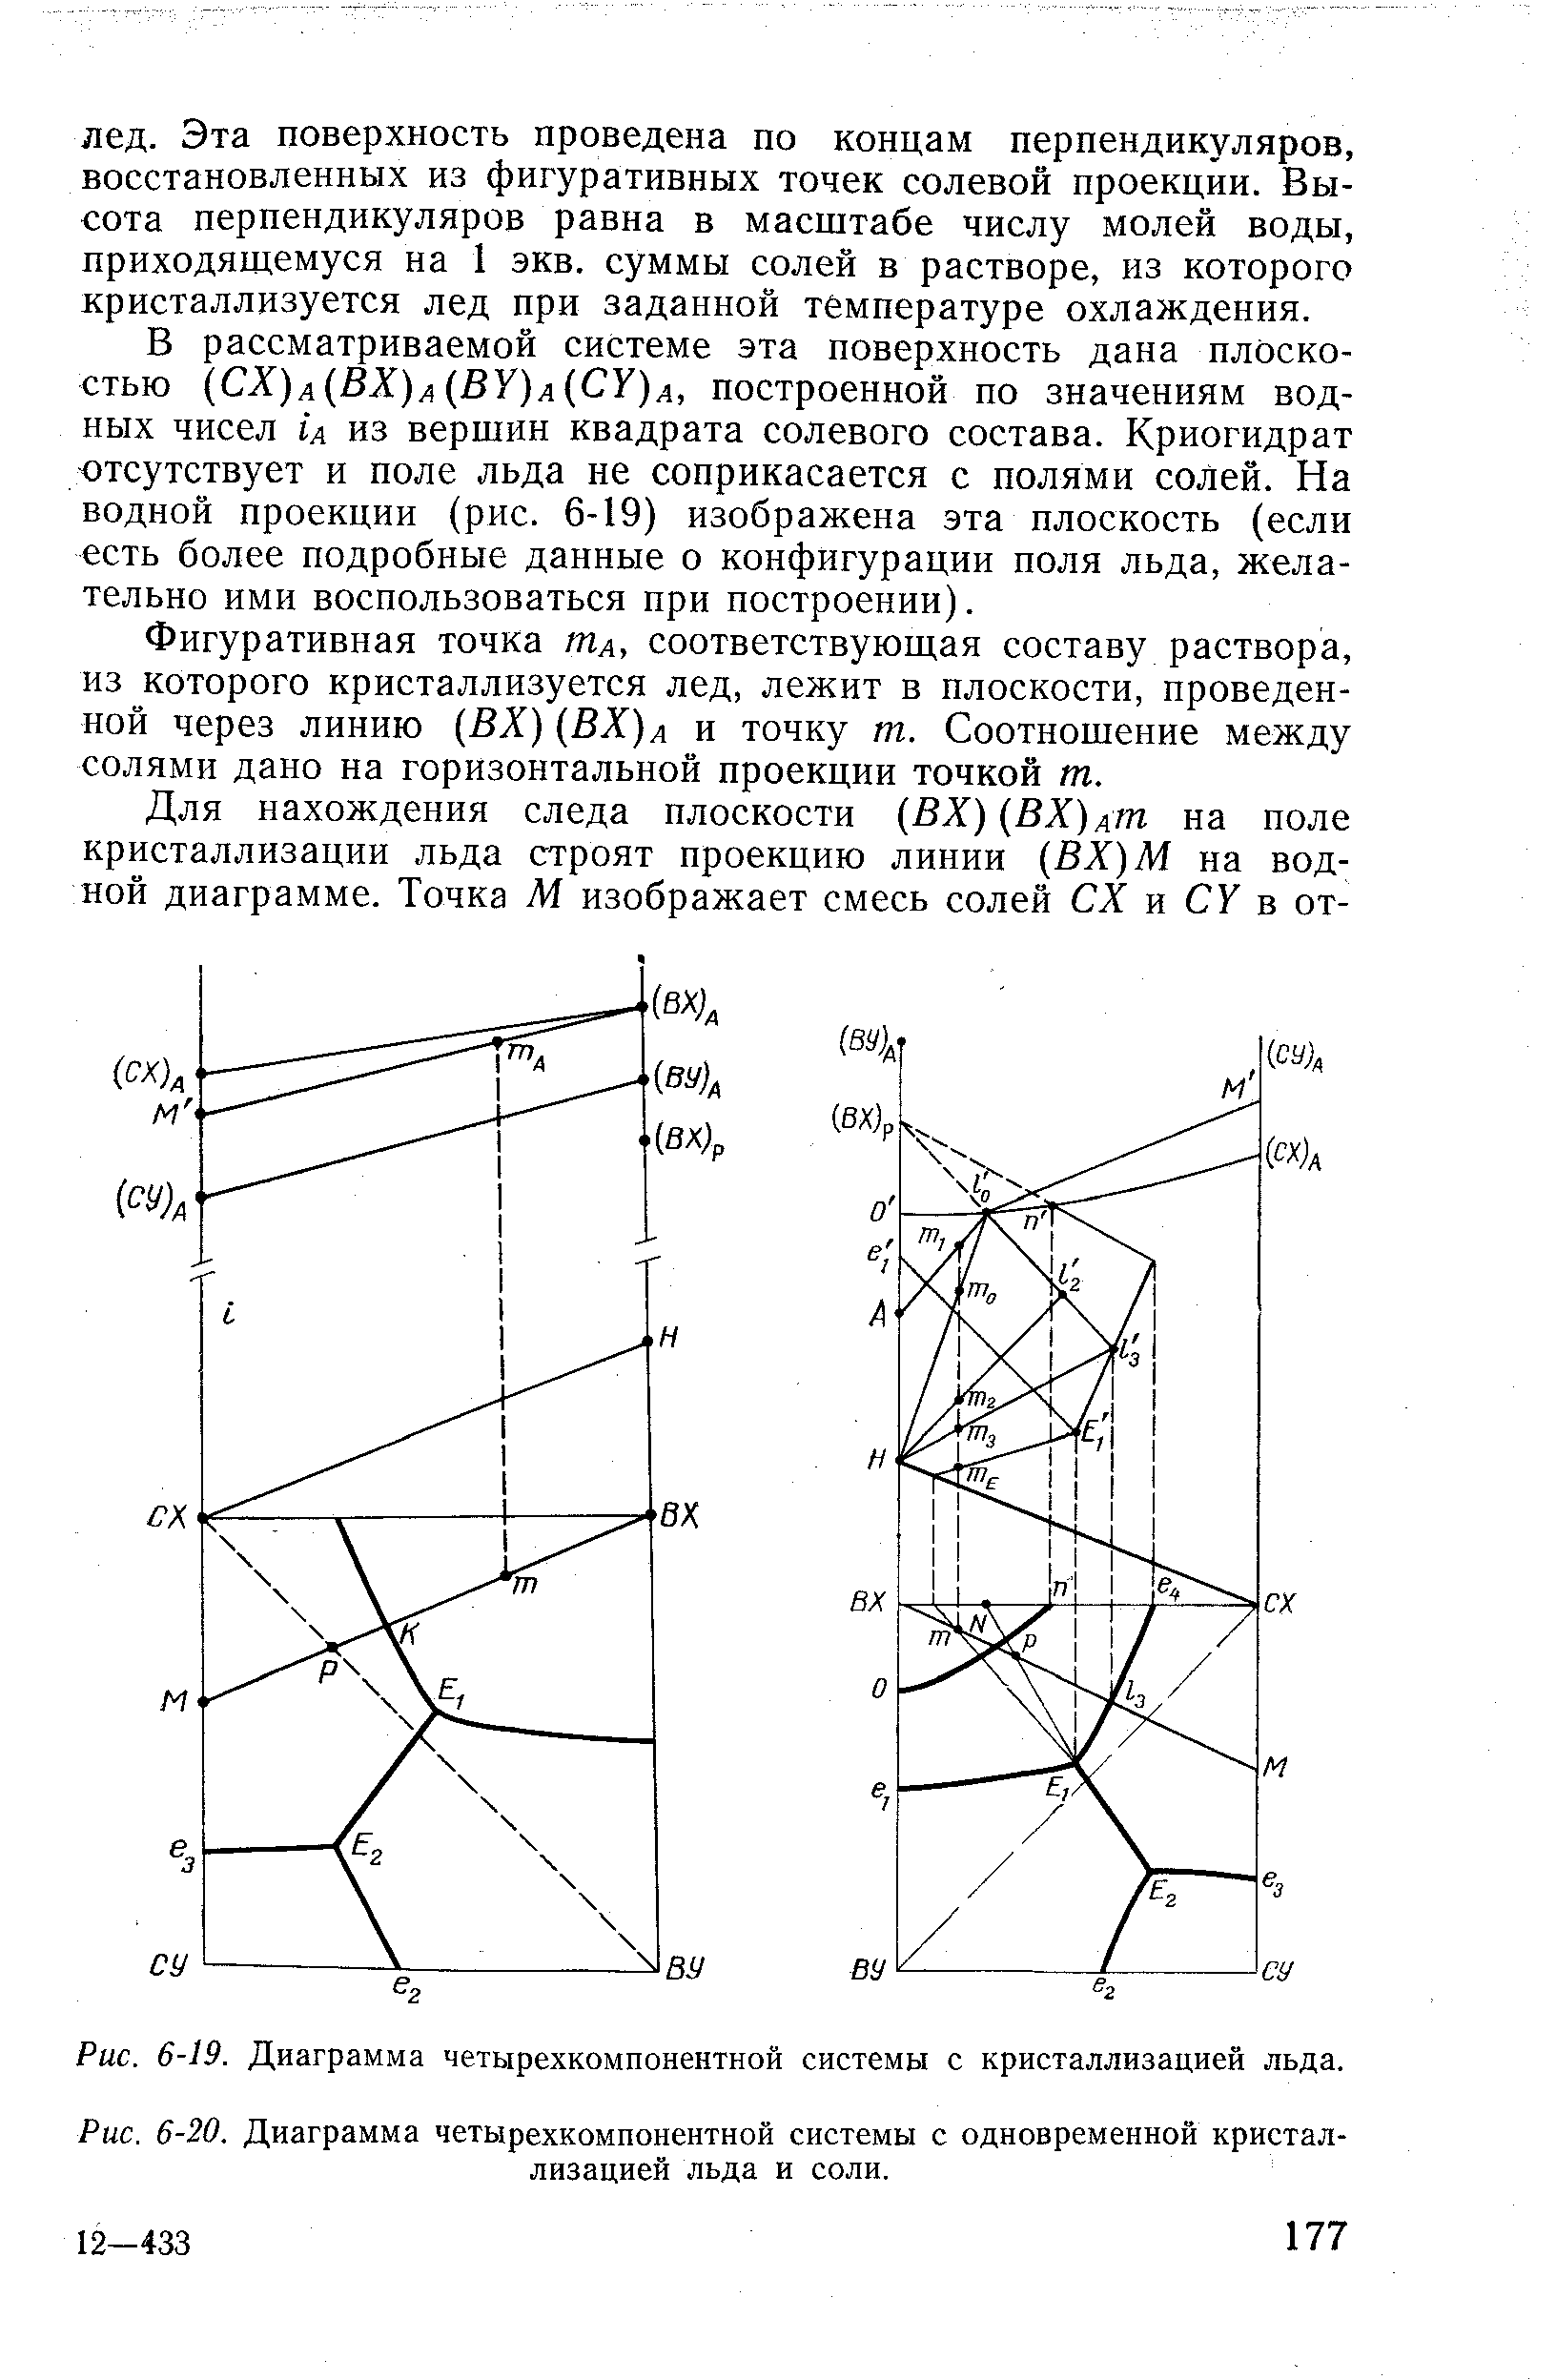 Рис. 6-20. <a href="/info/678370">Диаграмма четырехкомпонентной системы</a> с одновременной кристаллизацией льда и соли.
